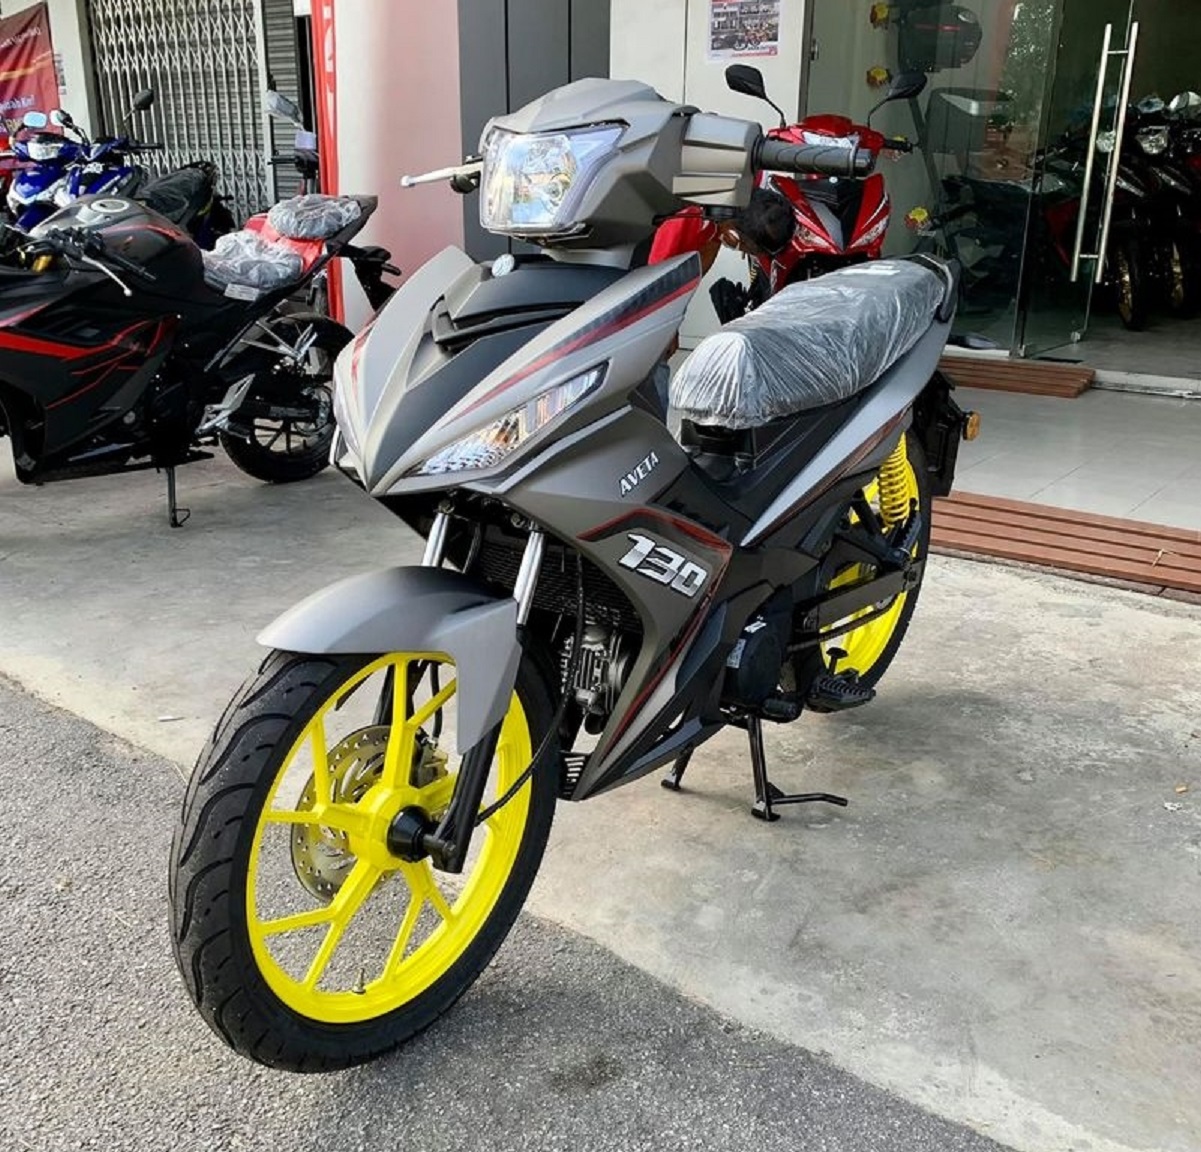 Exciter 150 2018 giá bao nhiêu Đánh giá xe Yamaha Exciter 2018 kèm các màu  mới  MuasamXecom